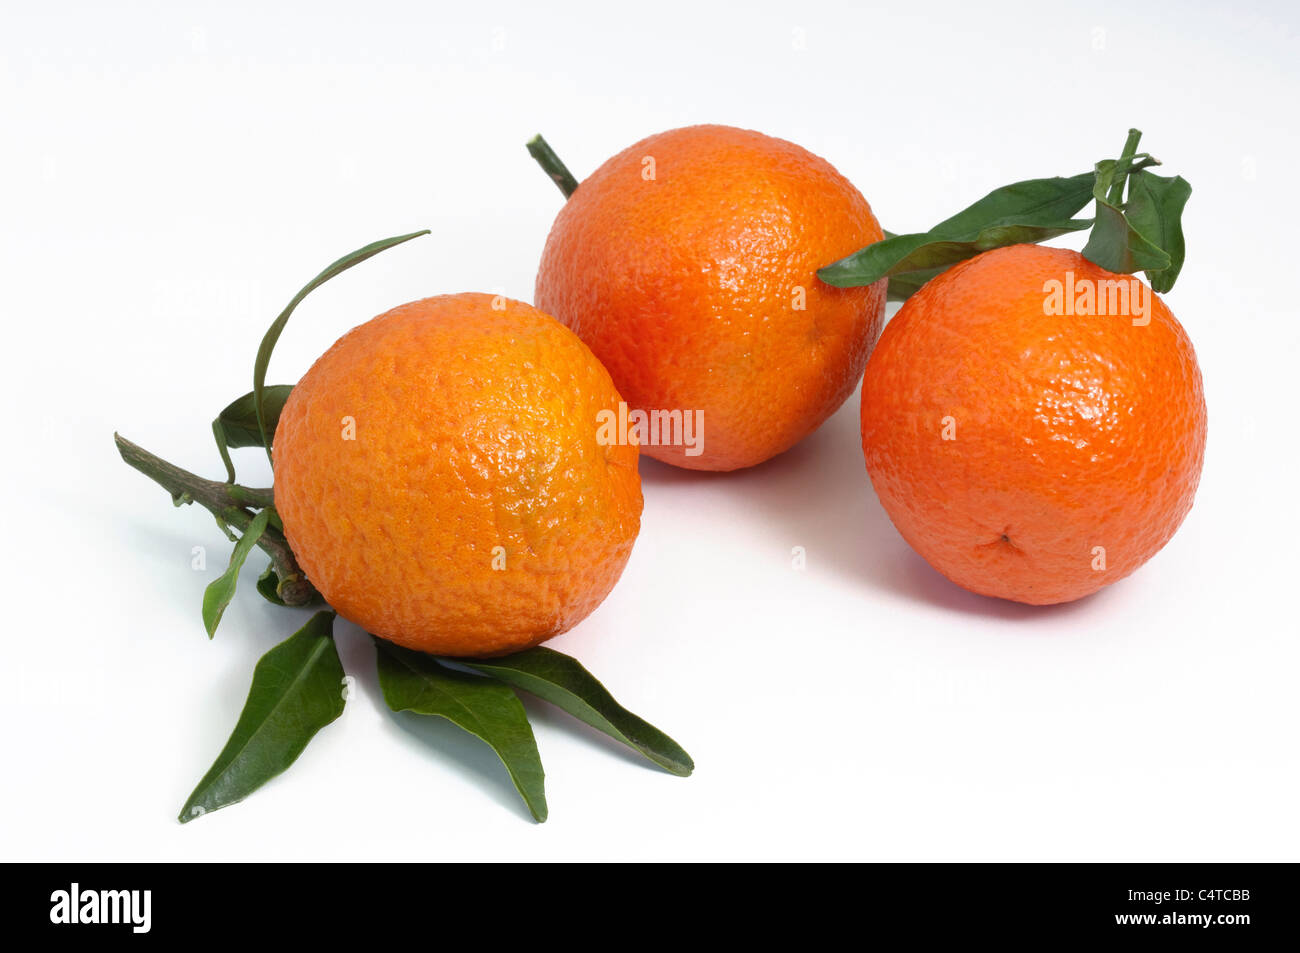 Clémentine (Citrus deliciosa), fruits mûrs, studio photo. Banque D'Images